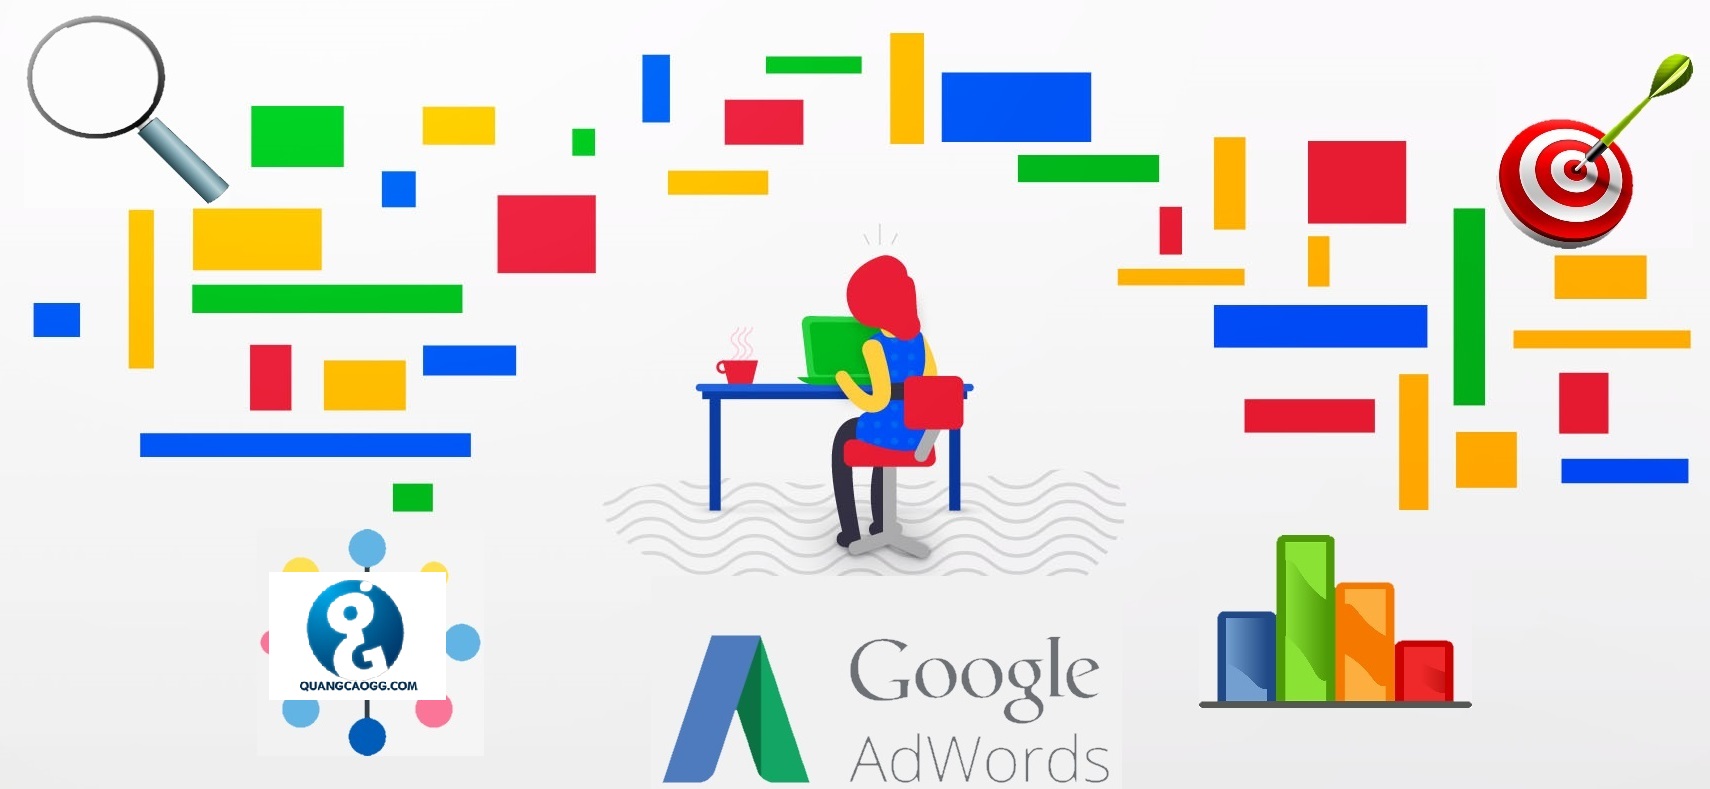 Quảng cáo Google Adwords cần chú ý gì trong lúc này?